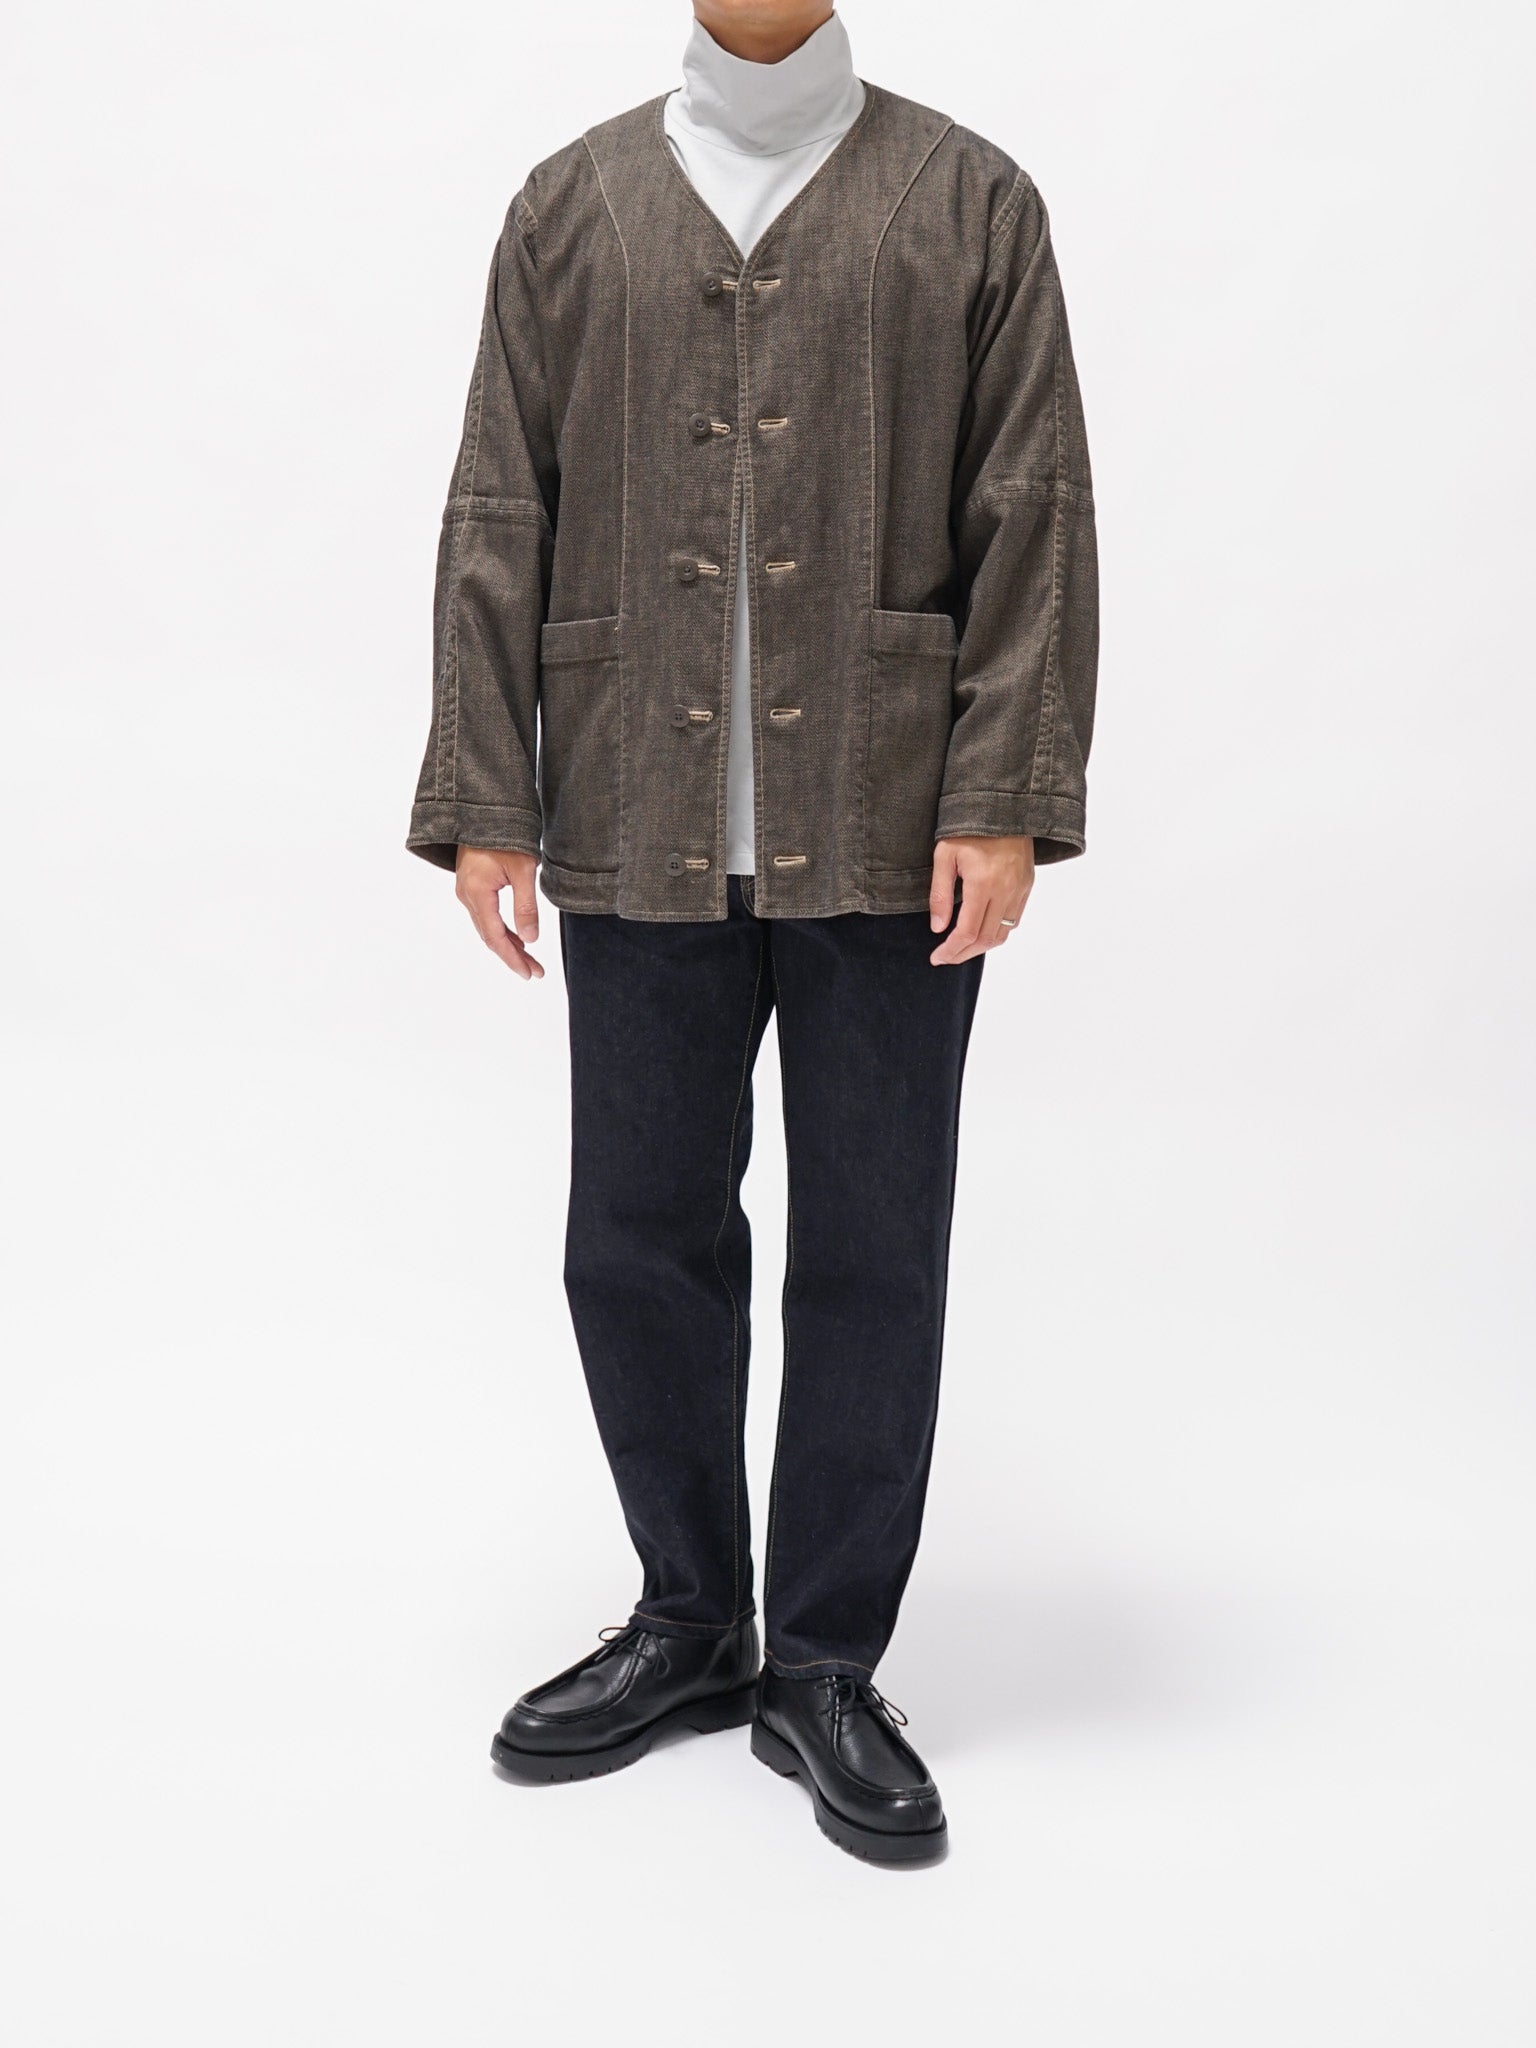 Namu Shop - ts(s) Garment Dye Oxford Reversible Jacket - Khaki